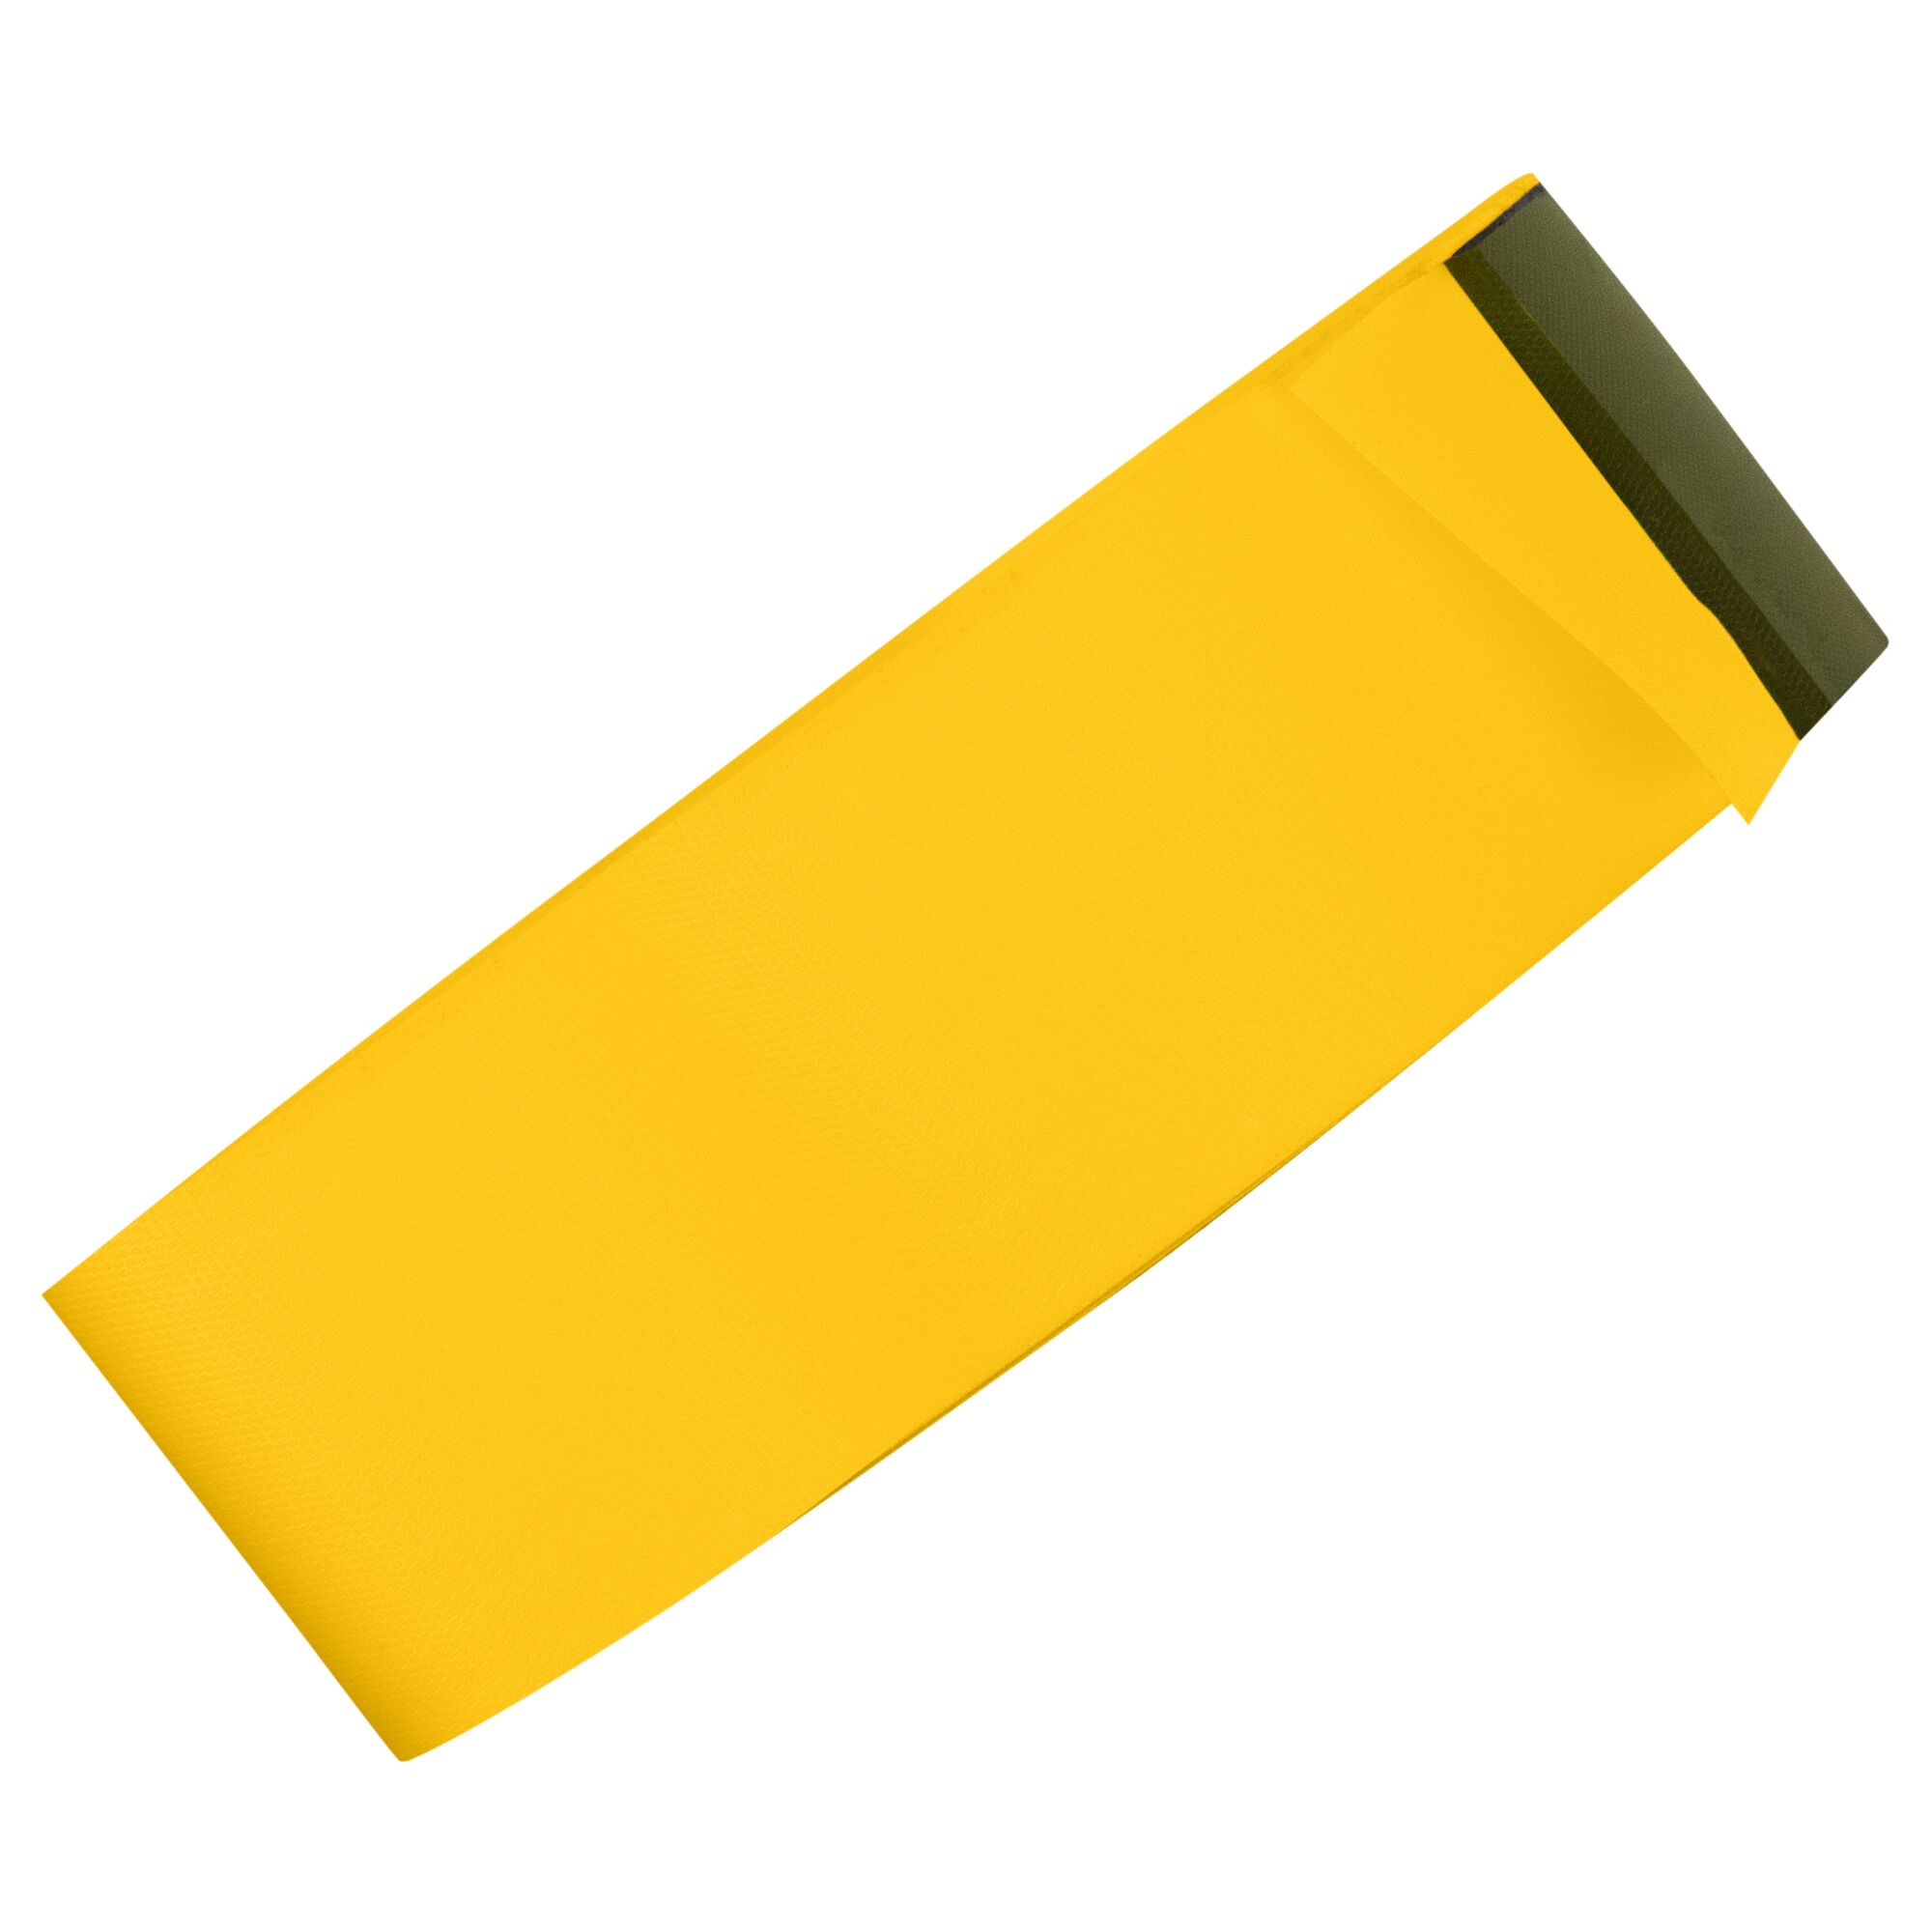 Hình ảnh 3 của mặt hàng Băng dính PVC màu vàng đậm Irwin